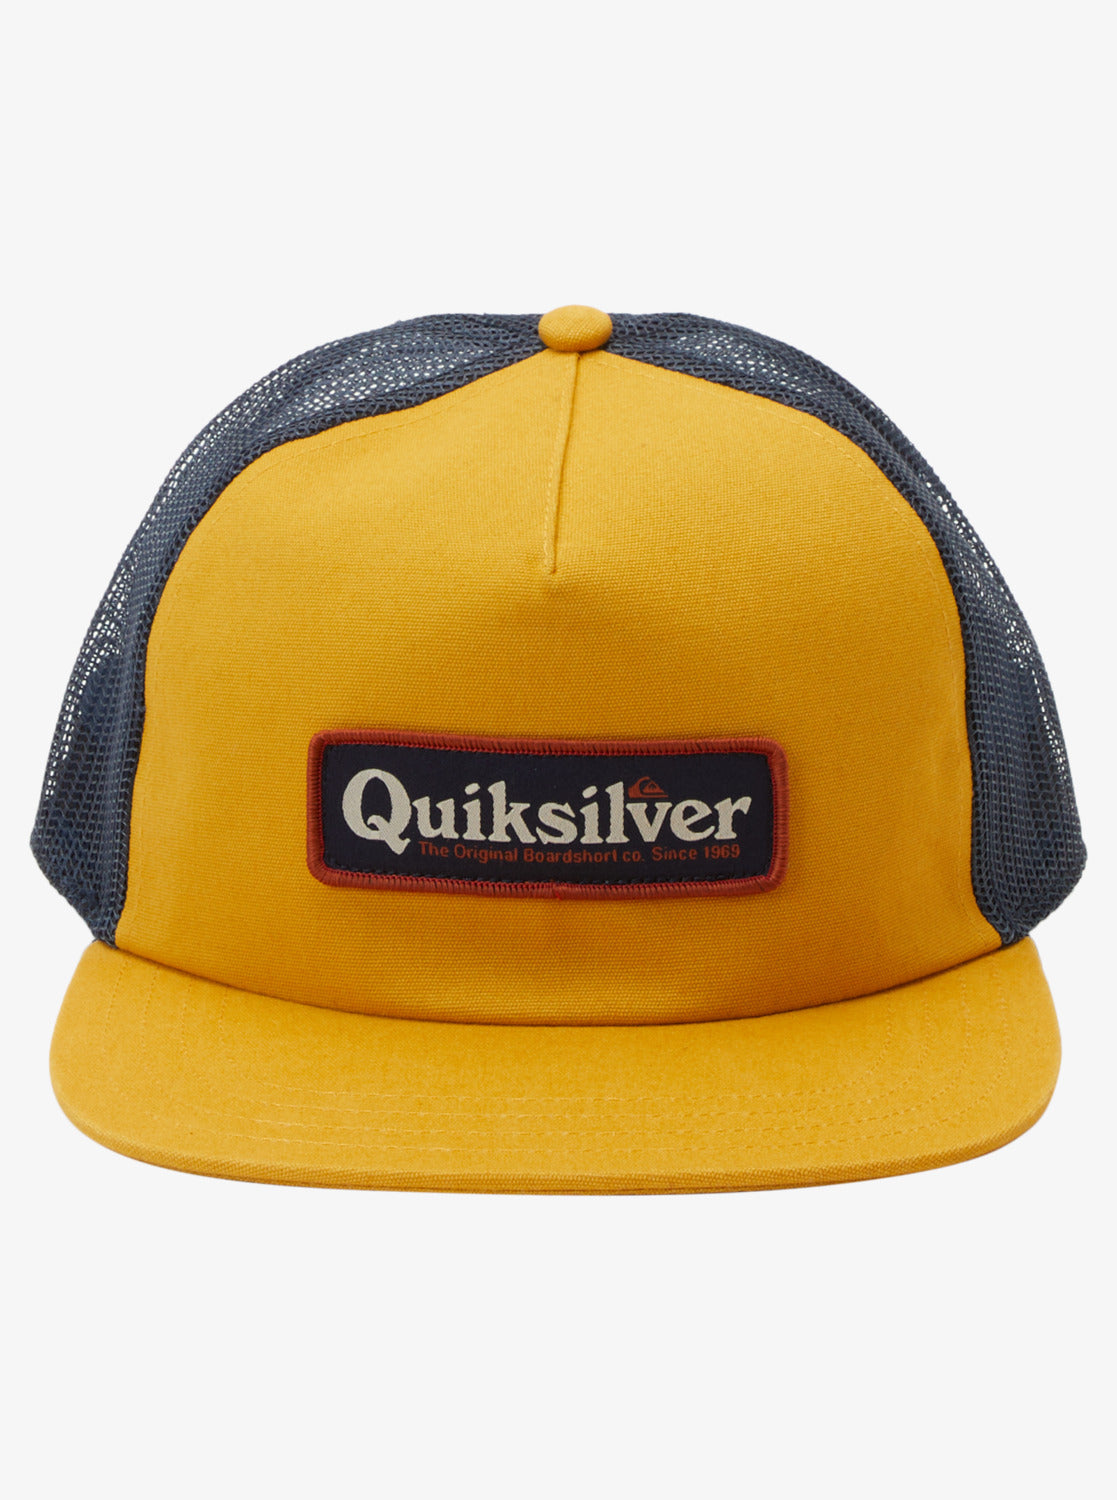 Quiksilver Pursey 2 Snapback